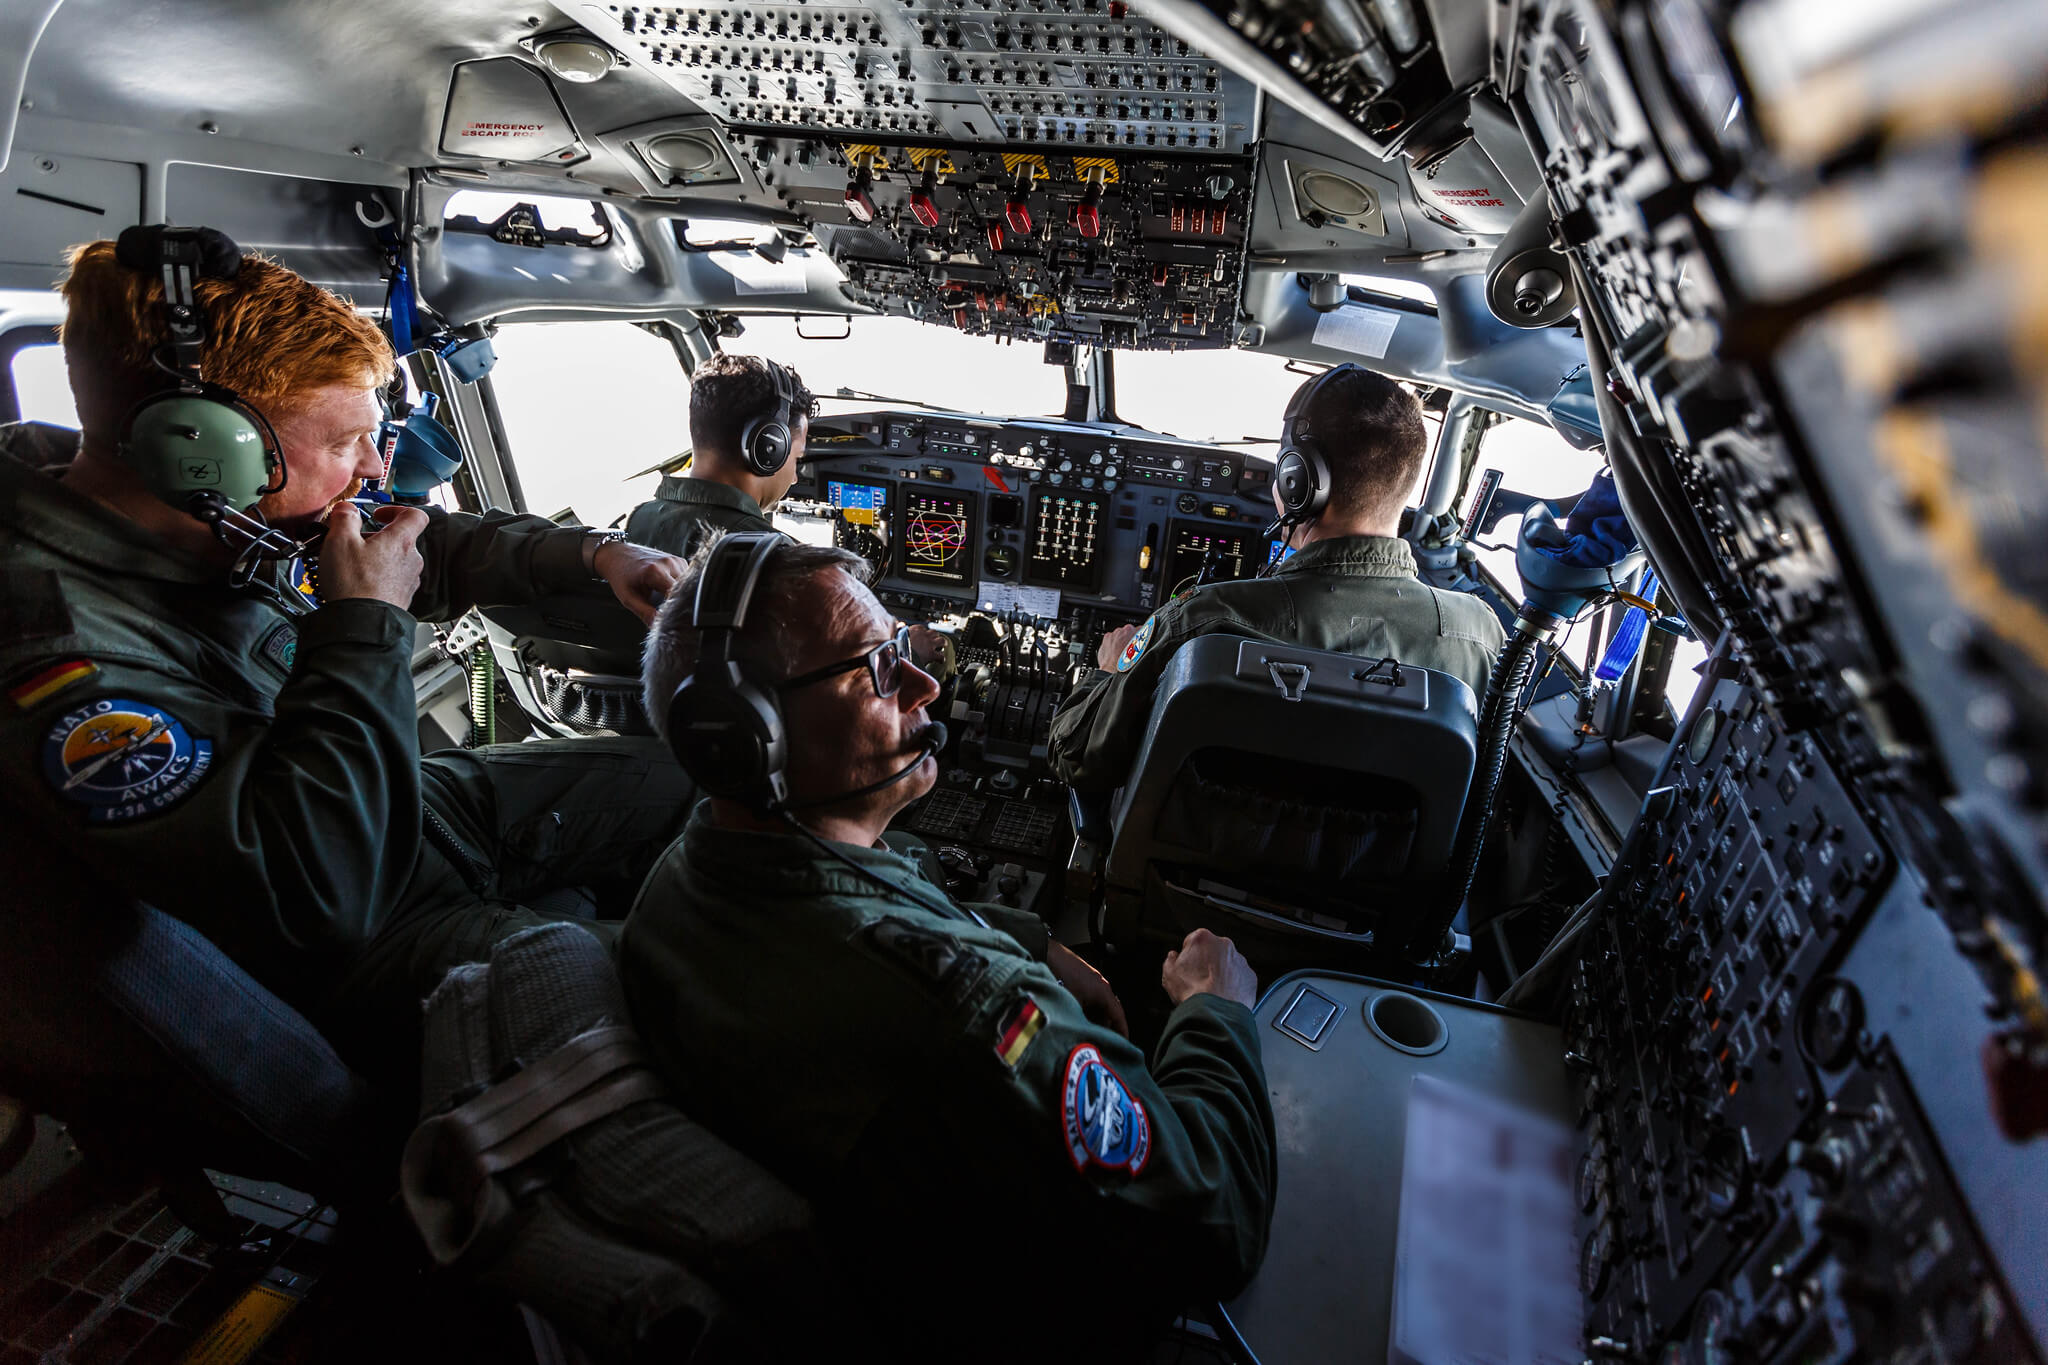 Klep-Een NAVO-verkenningsvliegtuig boven Irak in 2018 ten ondersteuning van de Global Coalition to Defeat ISIS. NATO 